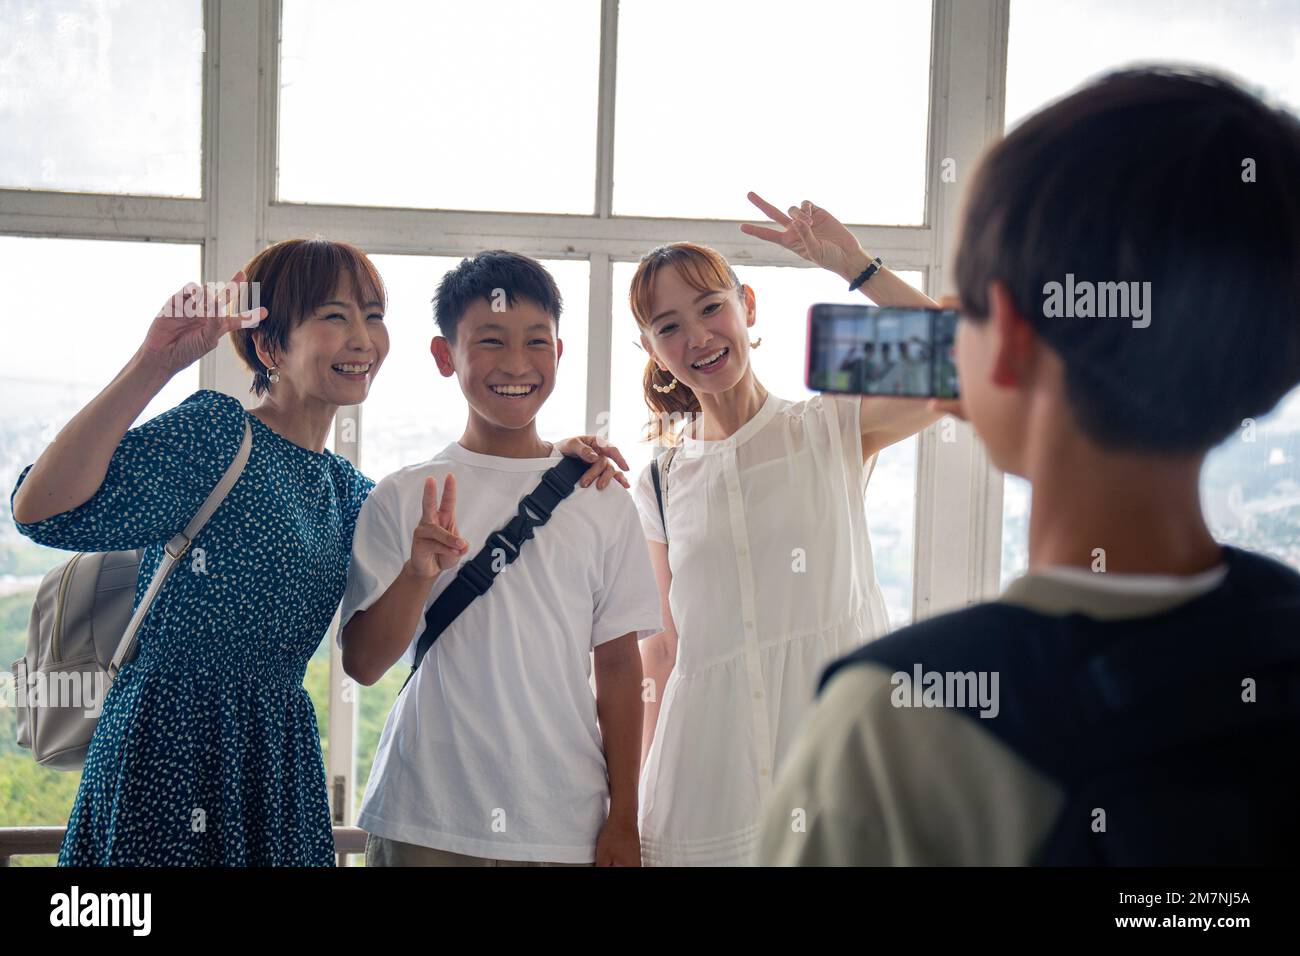 Un niño usando su teléfono móvil para tomar una foto de tres japoneses, un niño de 13 años, su madre y un amigo. Foto de stock